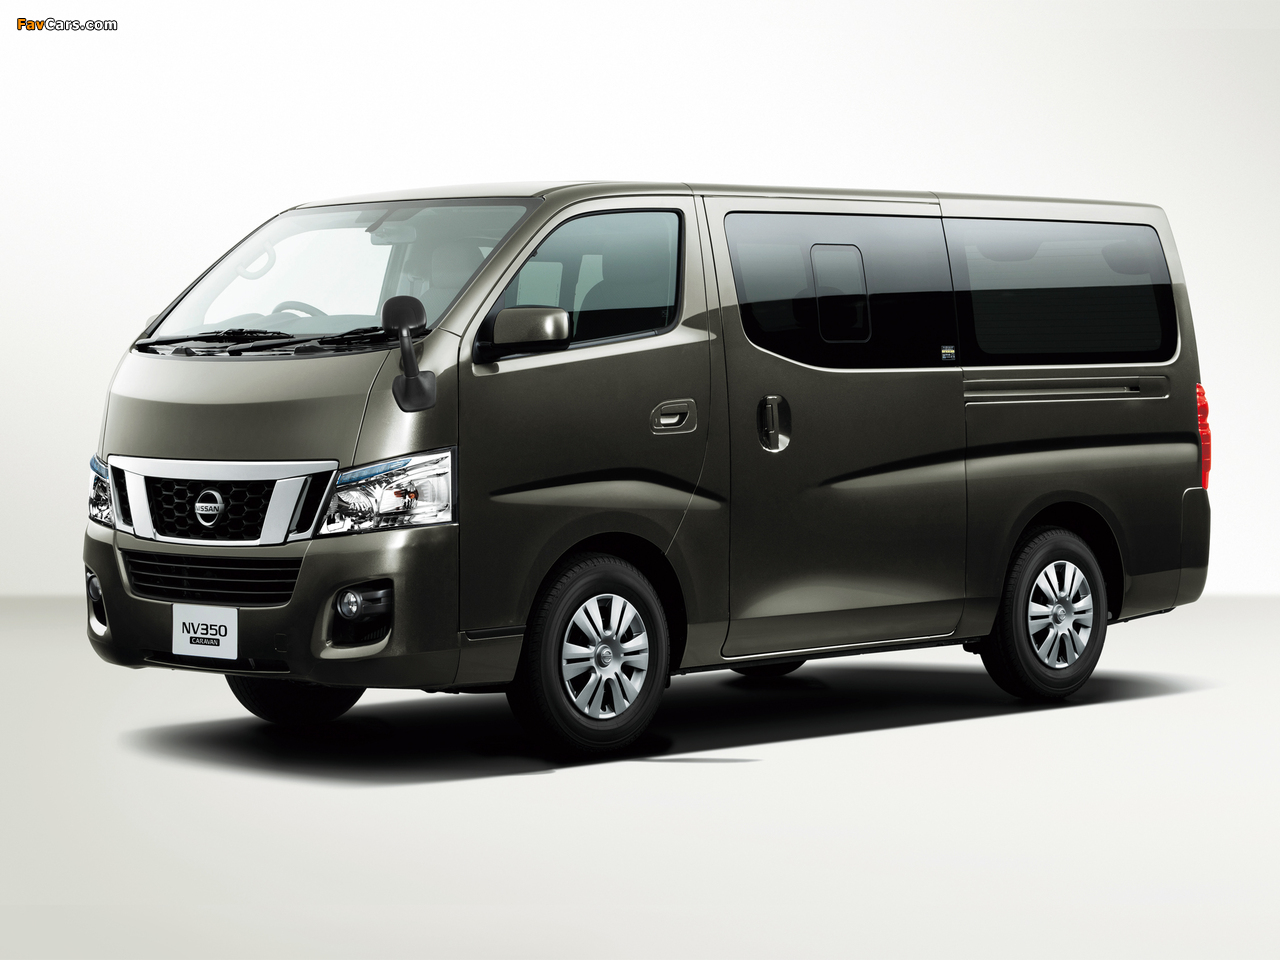 Nissan NV350 Caravan Premium GX (E26) 2012 images (1280 x 960)